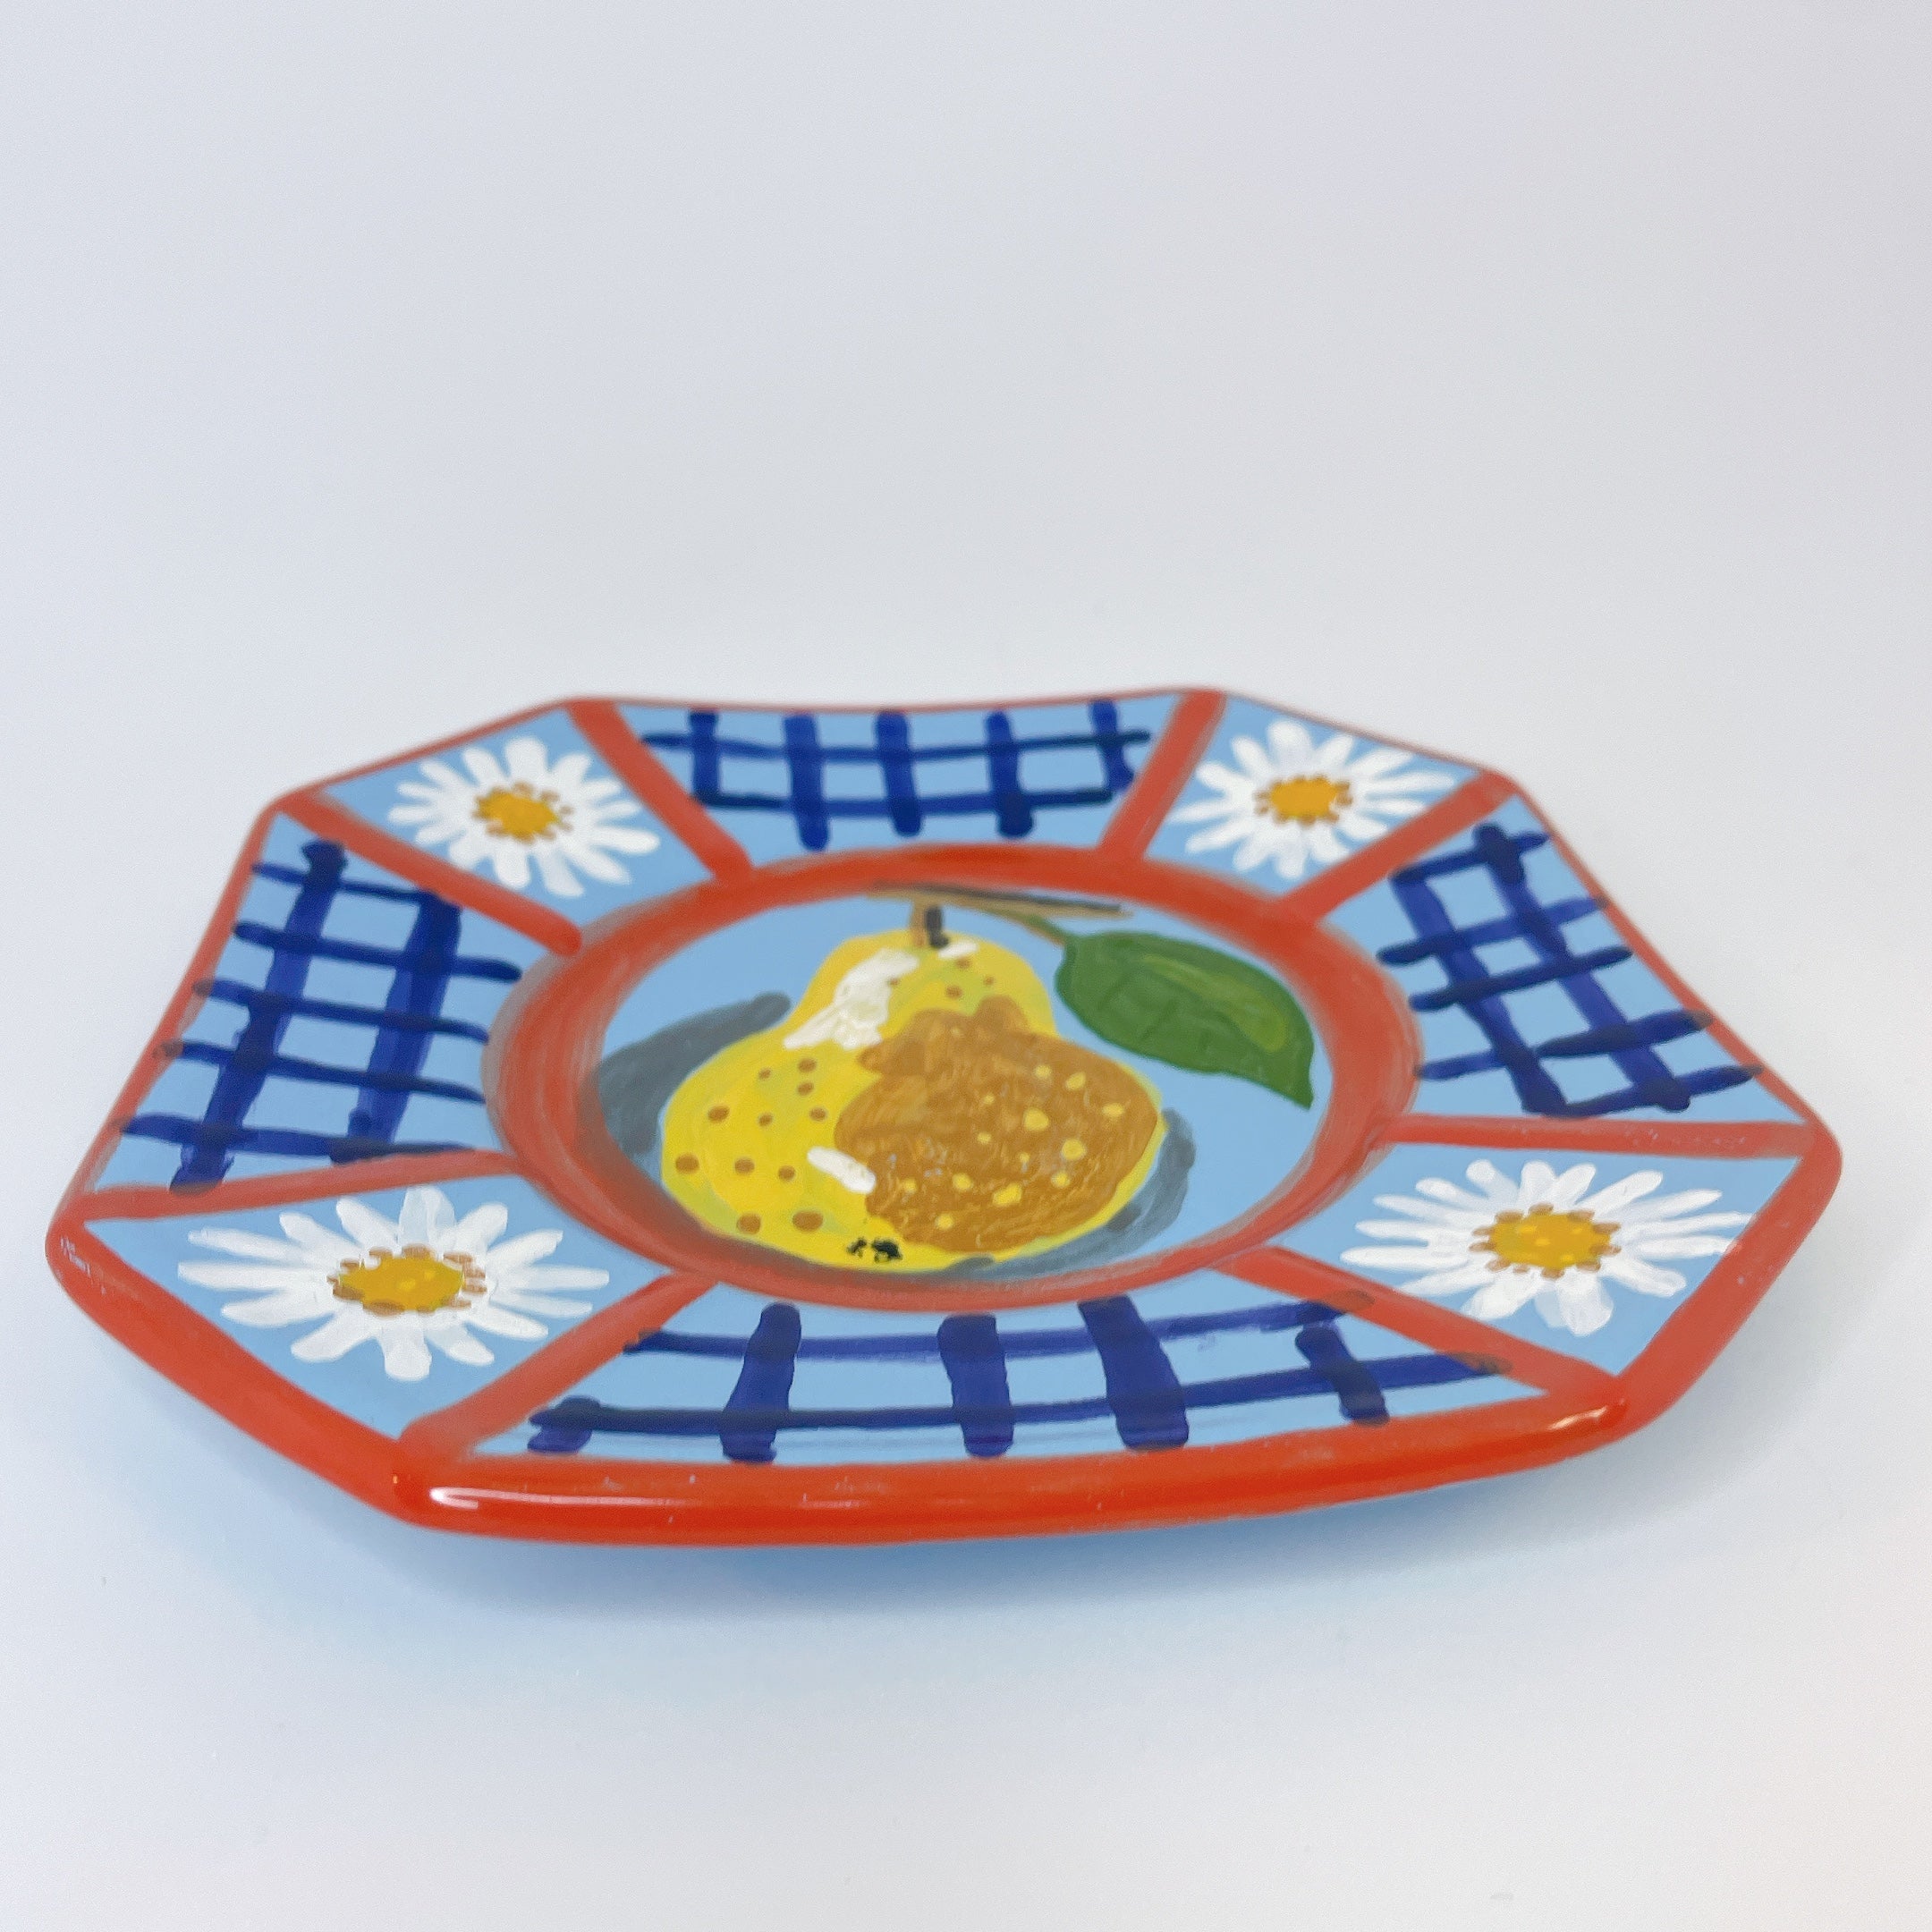 ハンドメイド 海外製 飾り皿 プレート - 食器